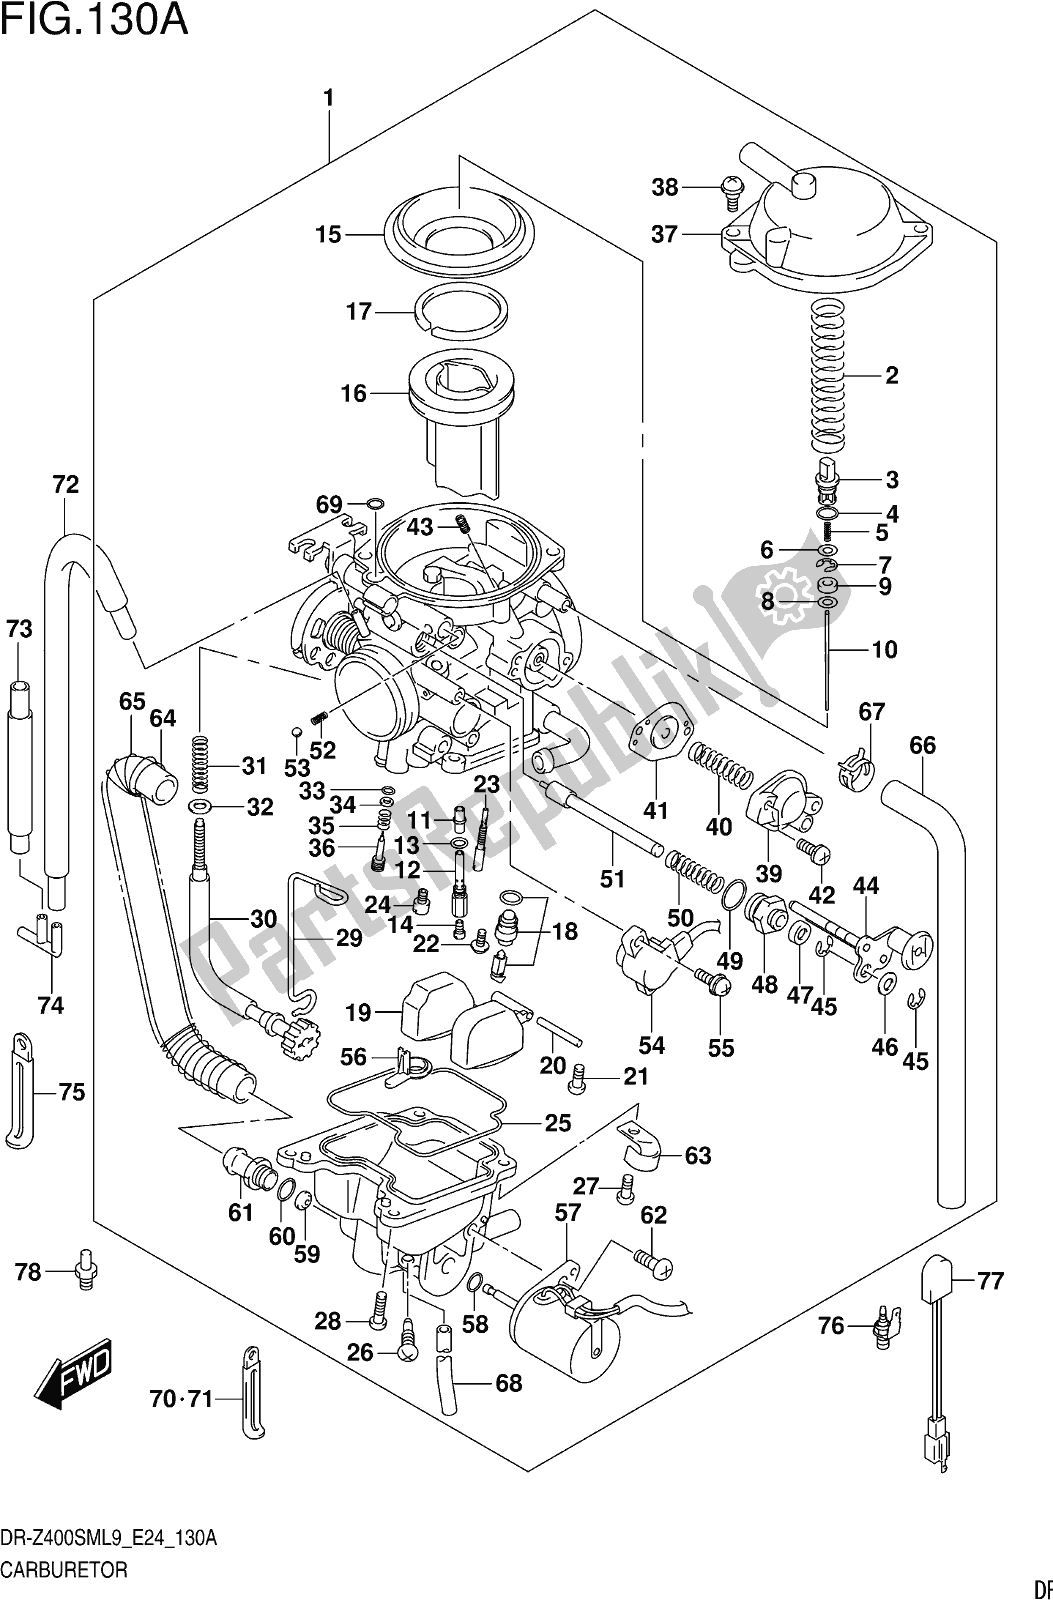 Alle onderdelen voor de Fig. 130a Carburetor van de Suzuki DR-Z 400 SM 2019